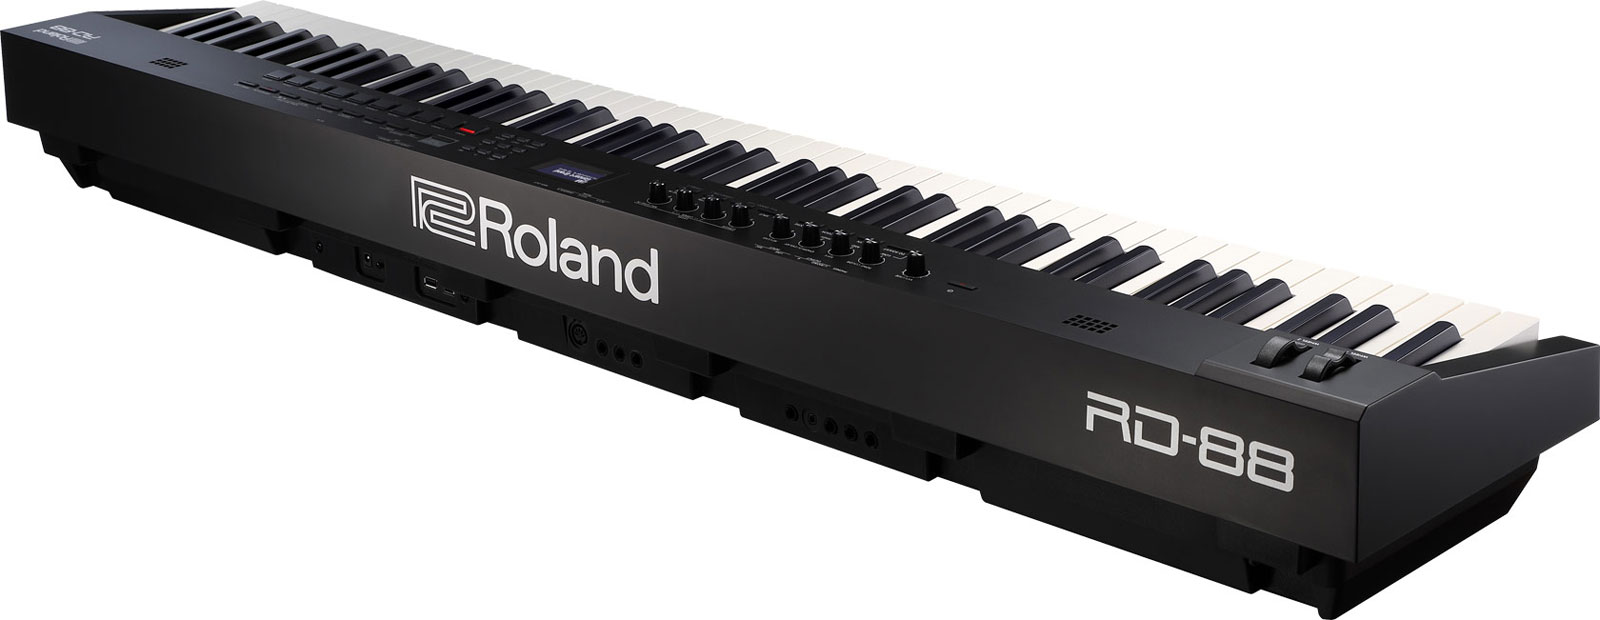 Roland Rd-88 - Teclado de escenario - Variation 3